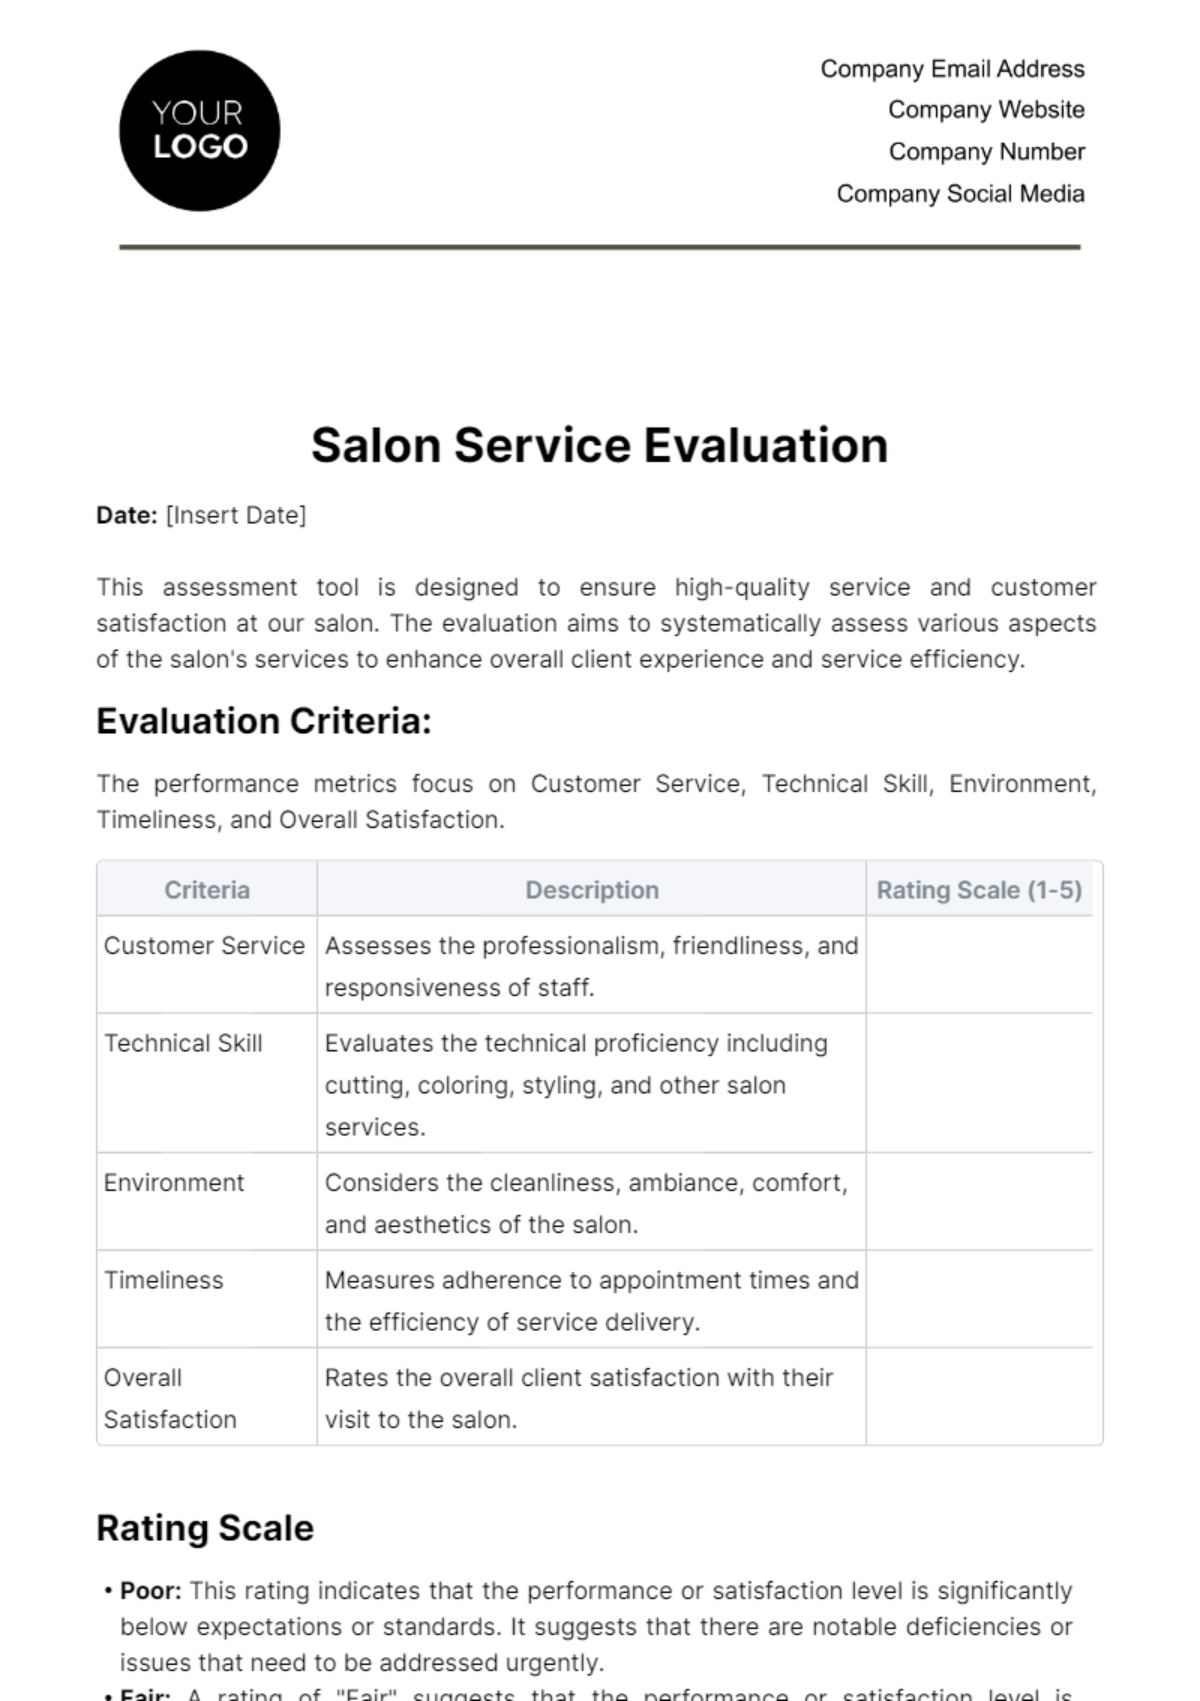 Free Salon Service Evaluation Template